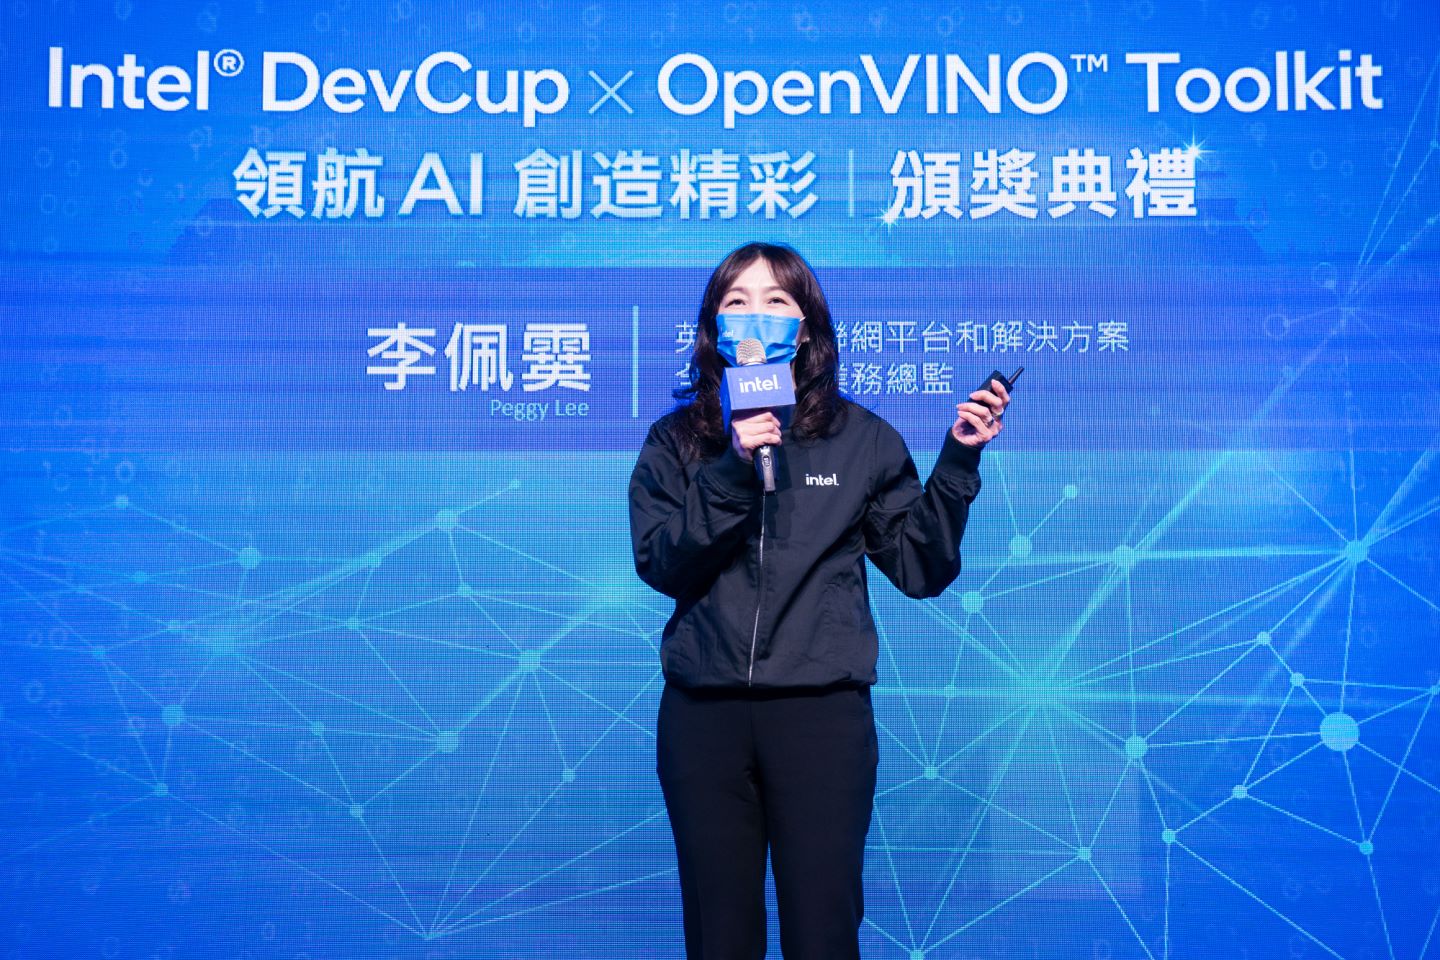 Intel公司物聯網平台和解決方案全球務總監李佩霙在頒獎典禮說明Intel對AI運算願景。